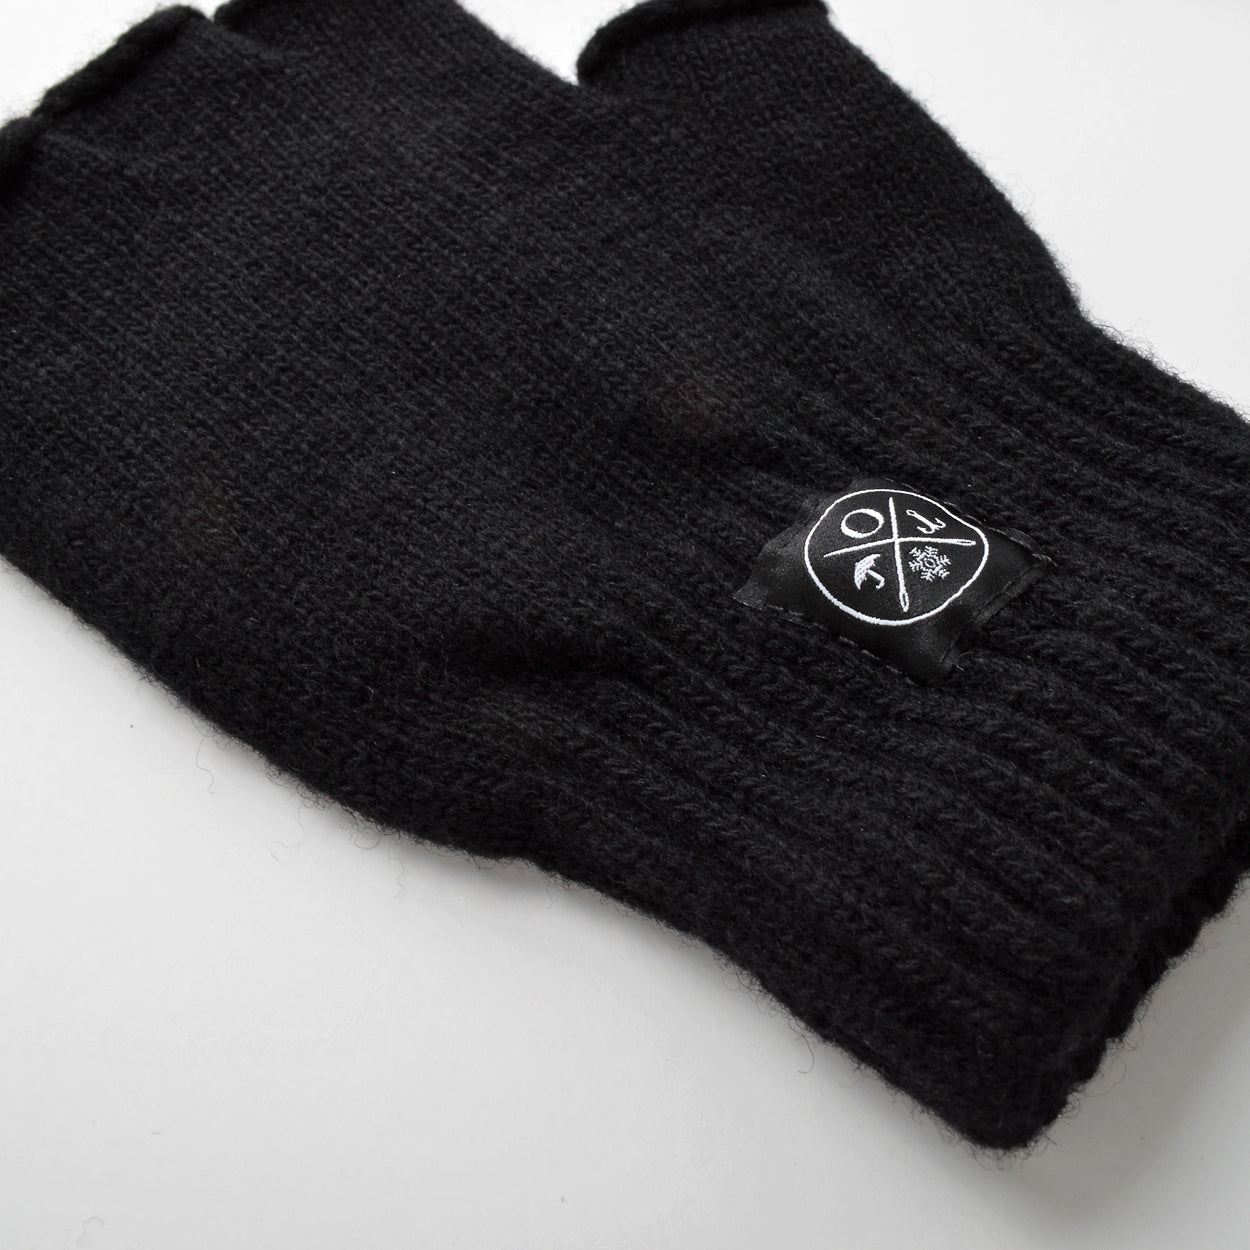 Black Fingerless Wool Gloves